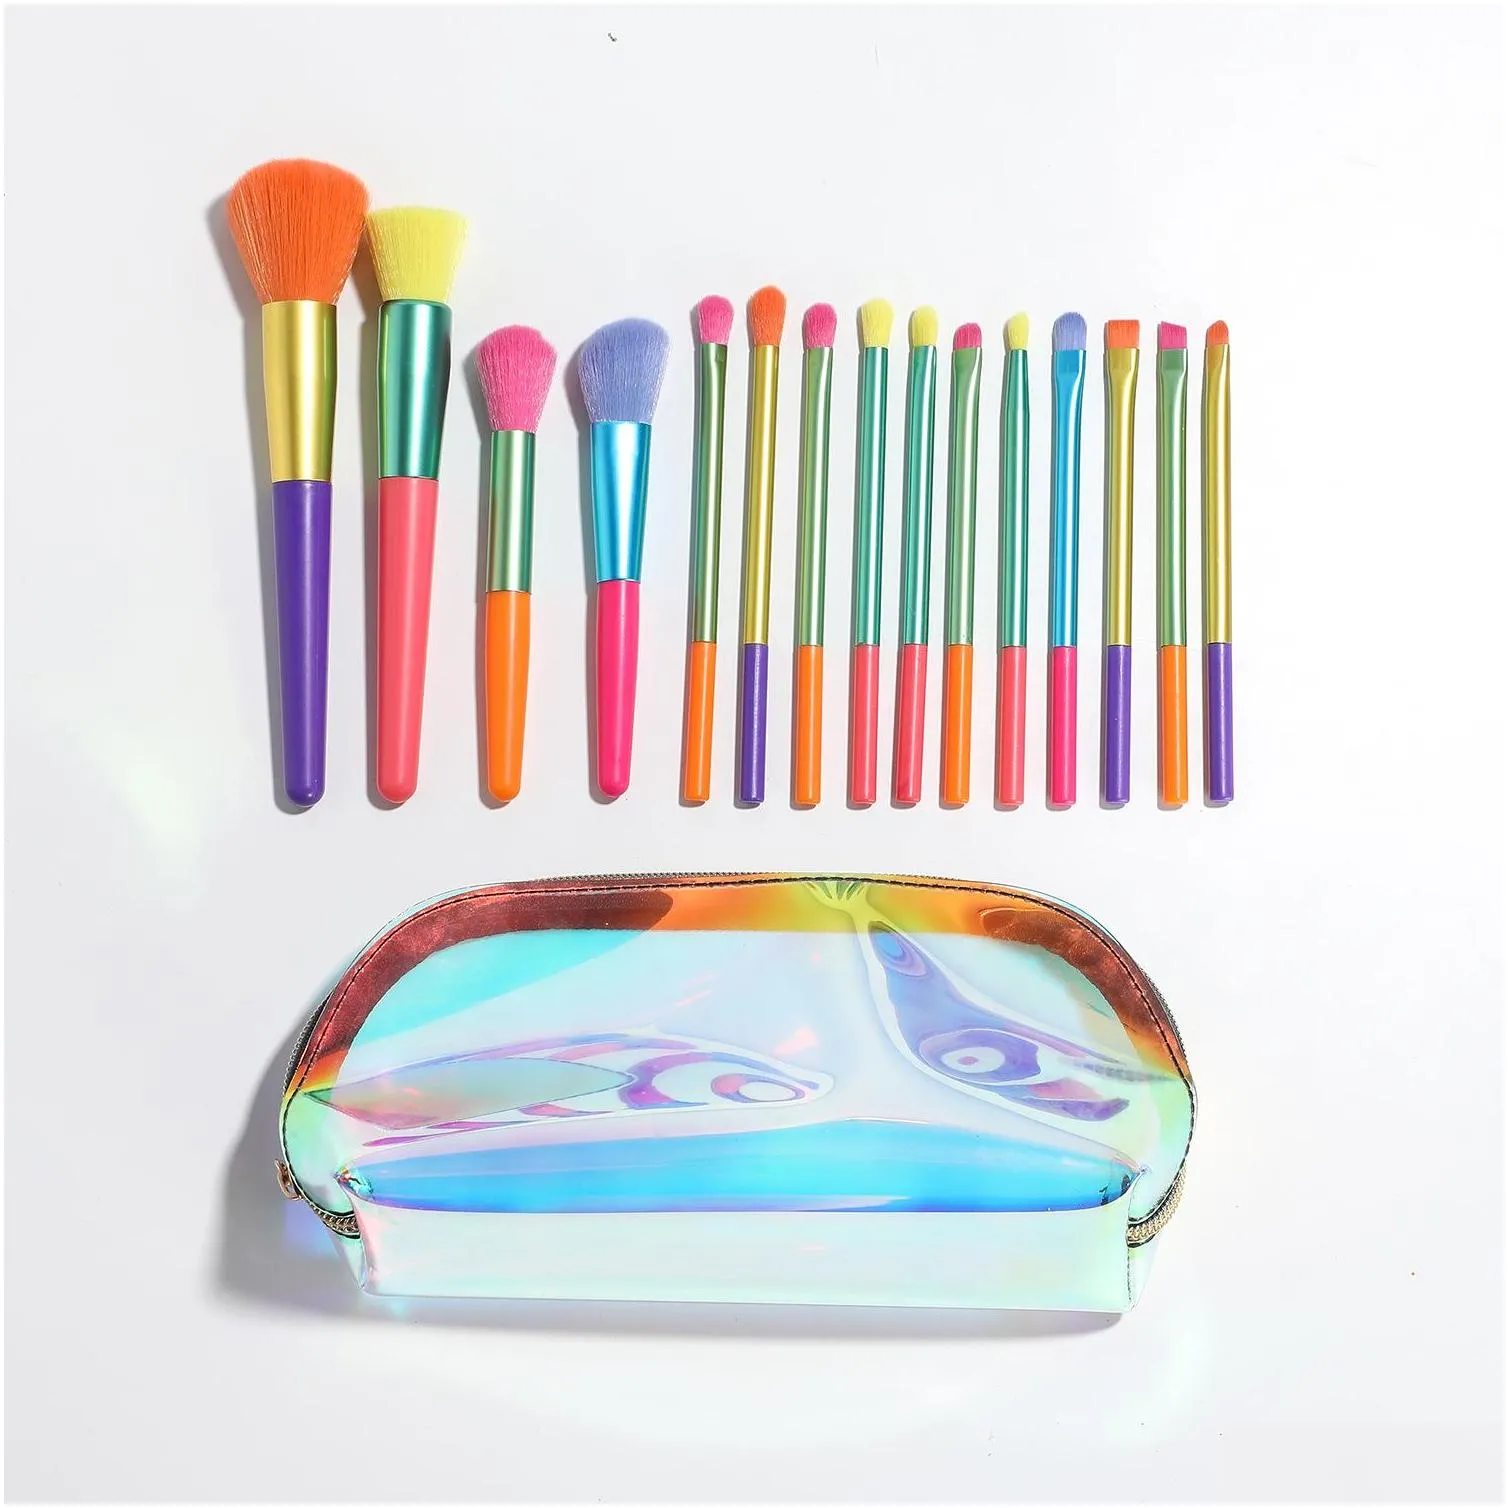 15pcs colorful makeup brushes set rainbow foundation powder contour eyeshadow brushes